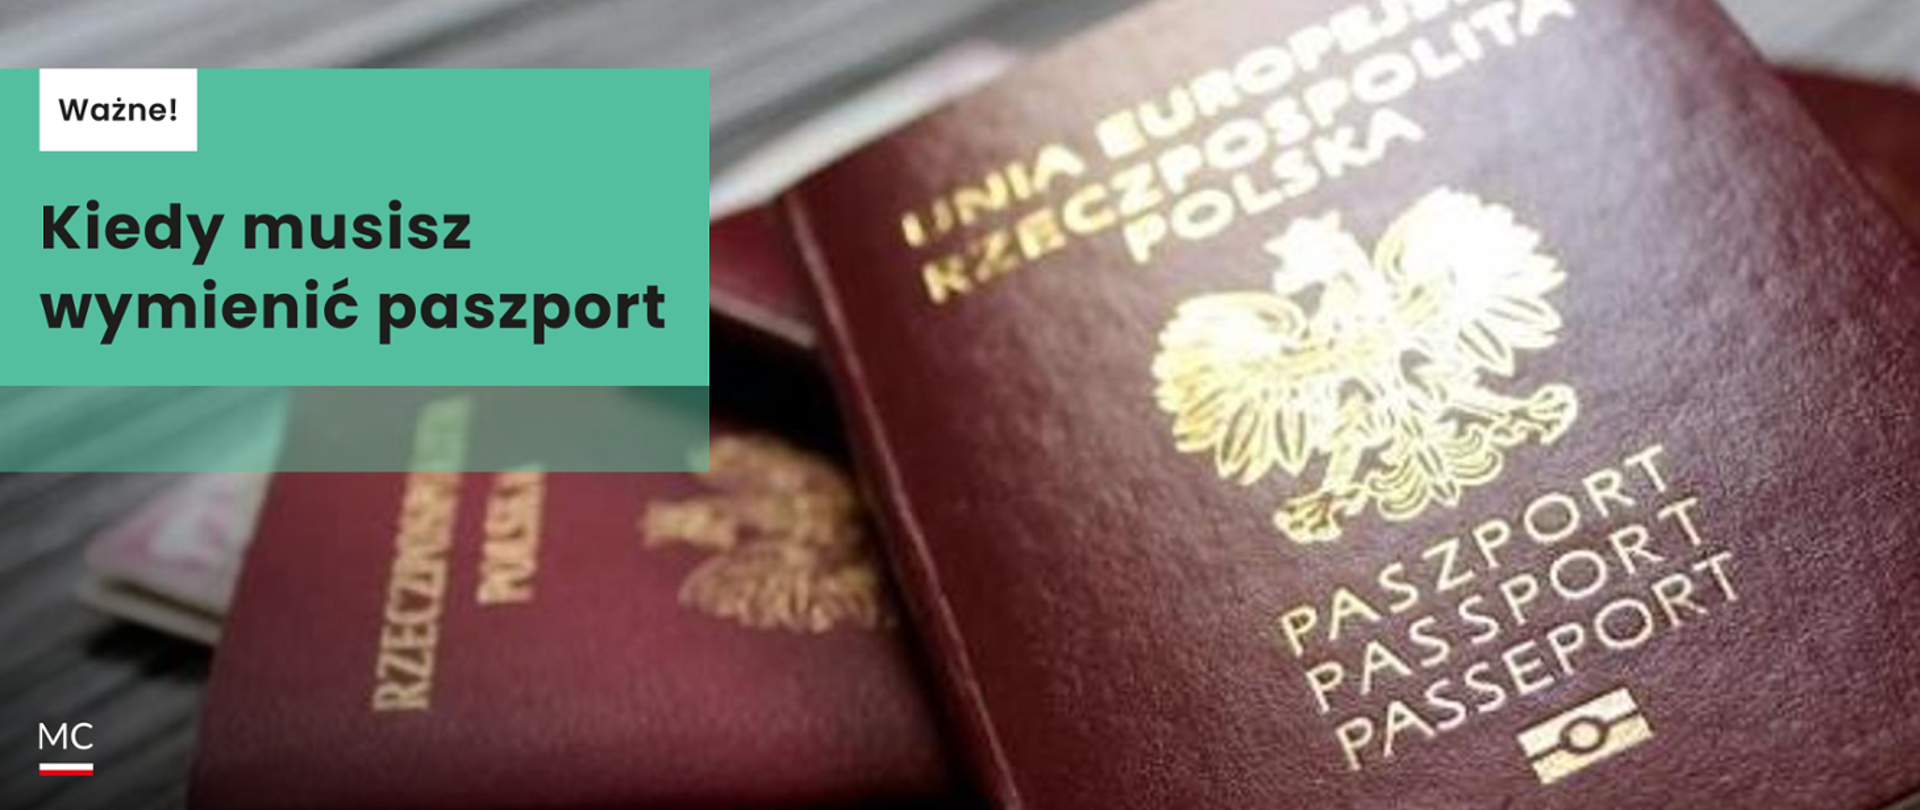 Napis na zielonym prostokącie Kiedy musisz wymienić paszport? W tle zbliżenie na dwa paszporty 